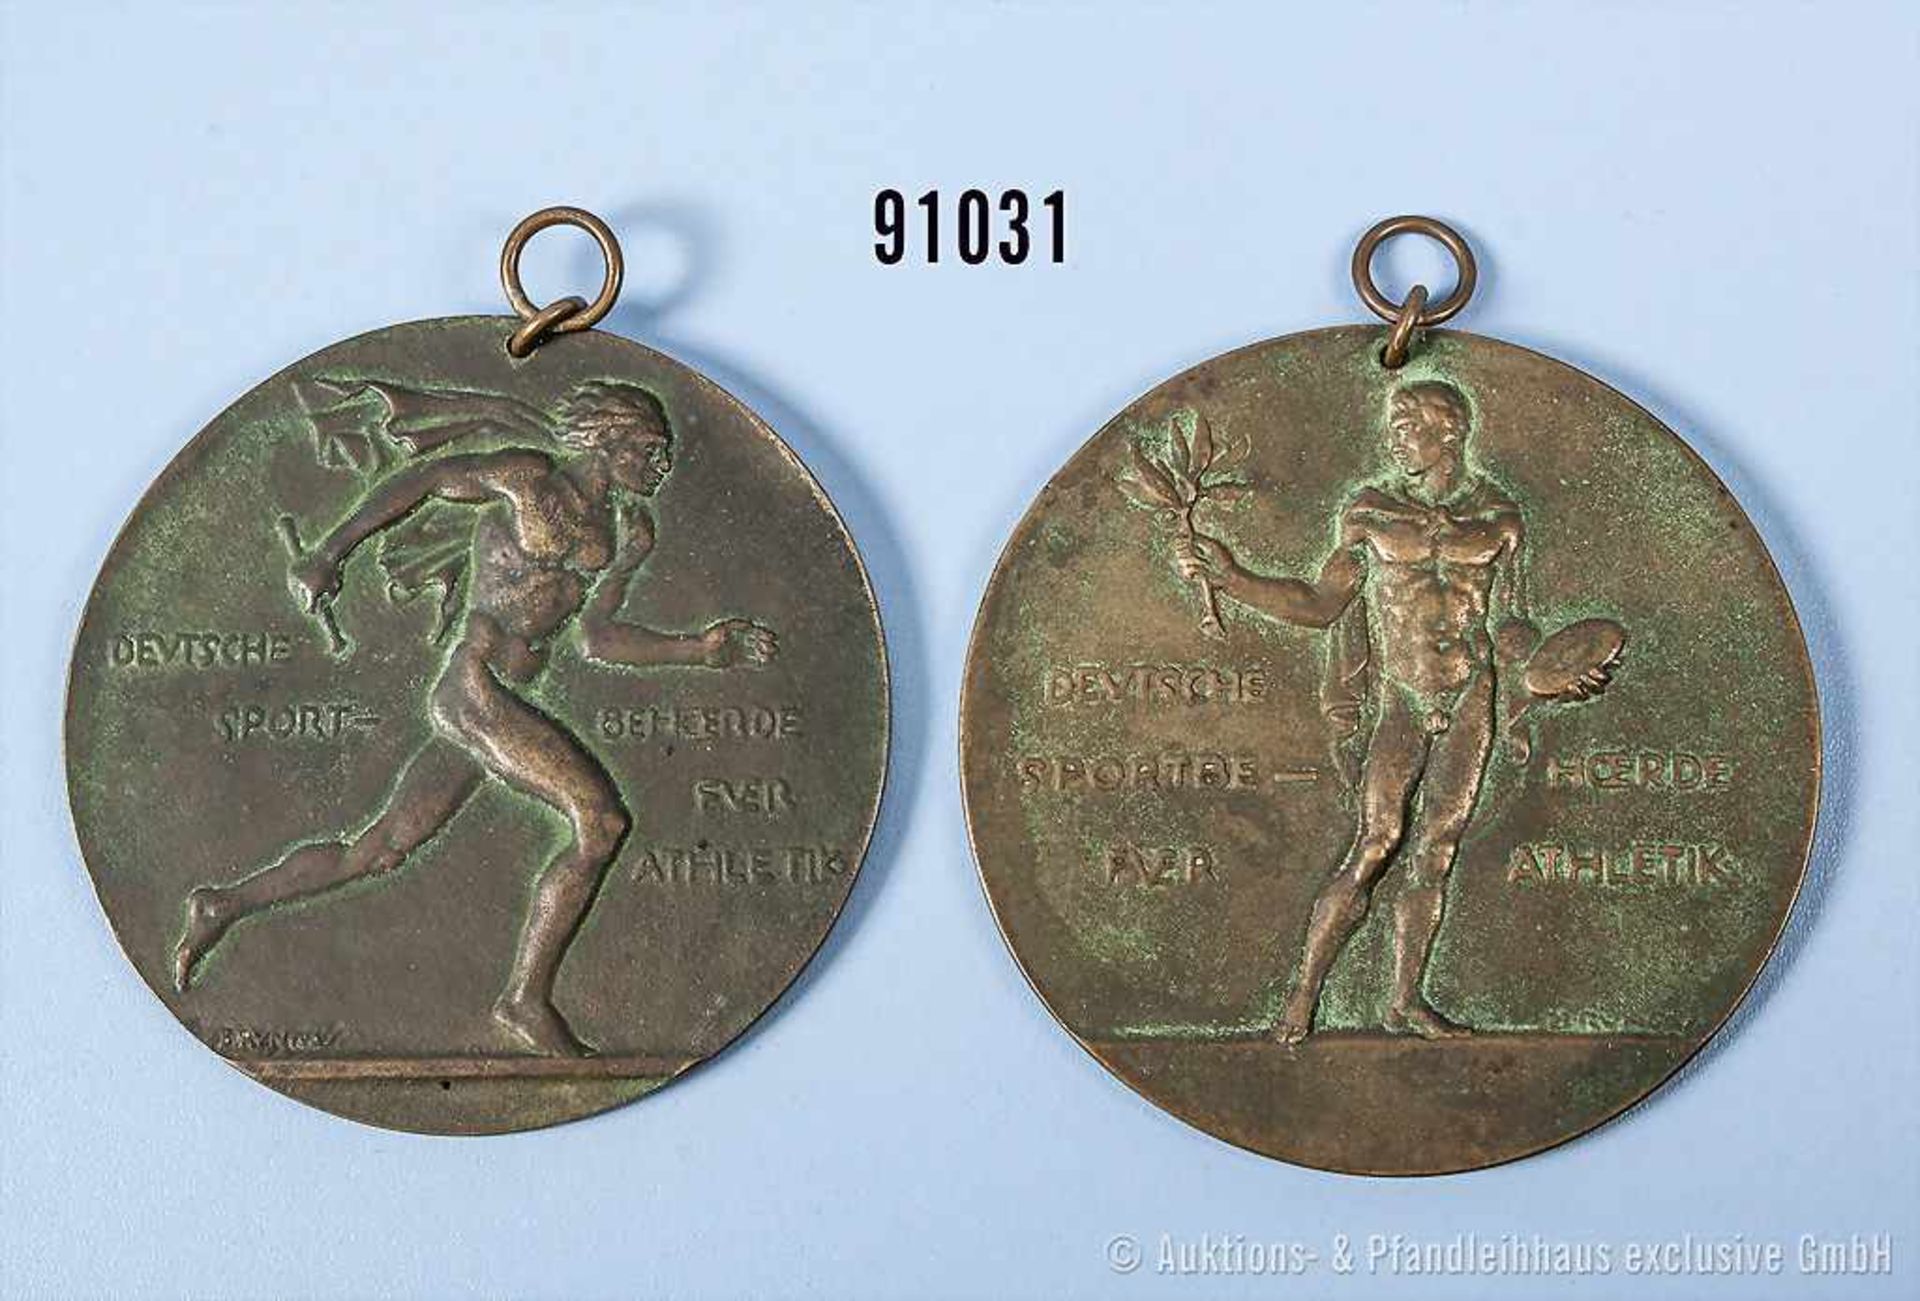 Konv. 2 Sportmedaillen von 1920 "Deutsche Sportbehörde für Athletik", jeweils 1. Preis, rückseitig